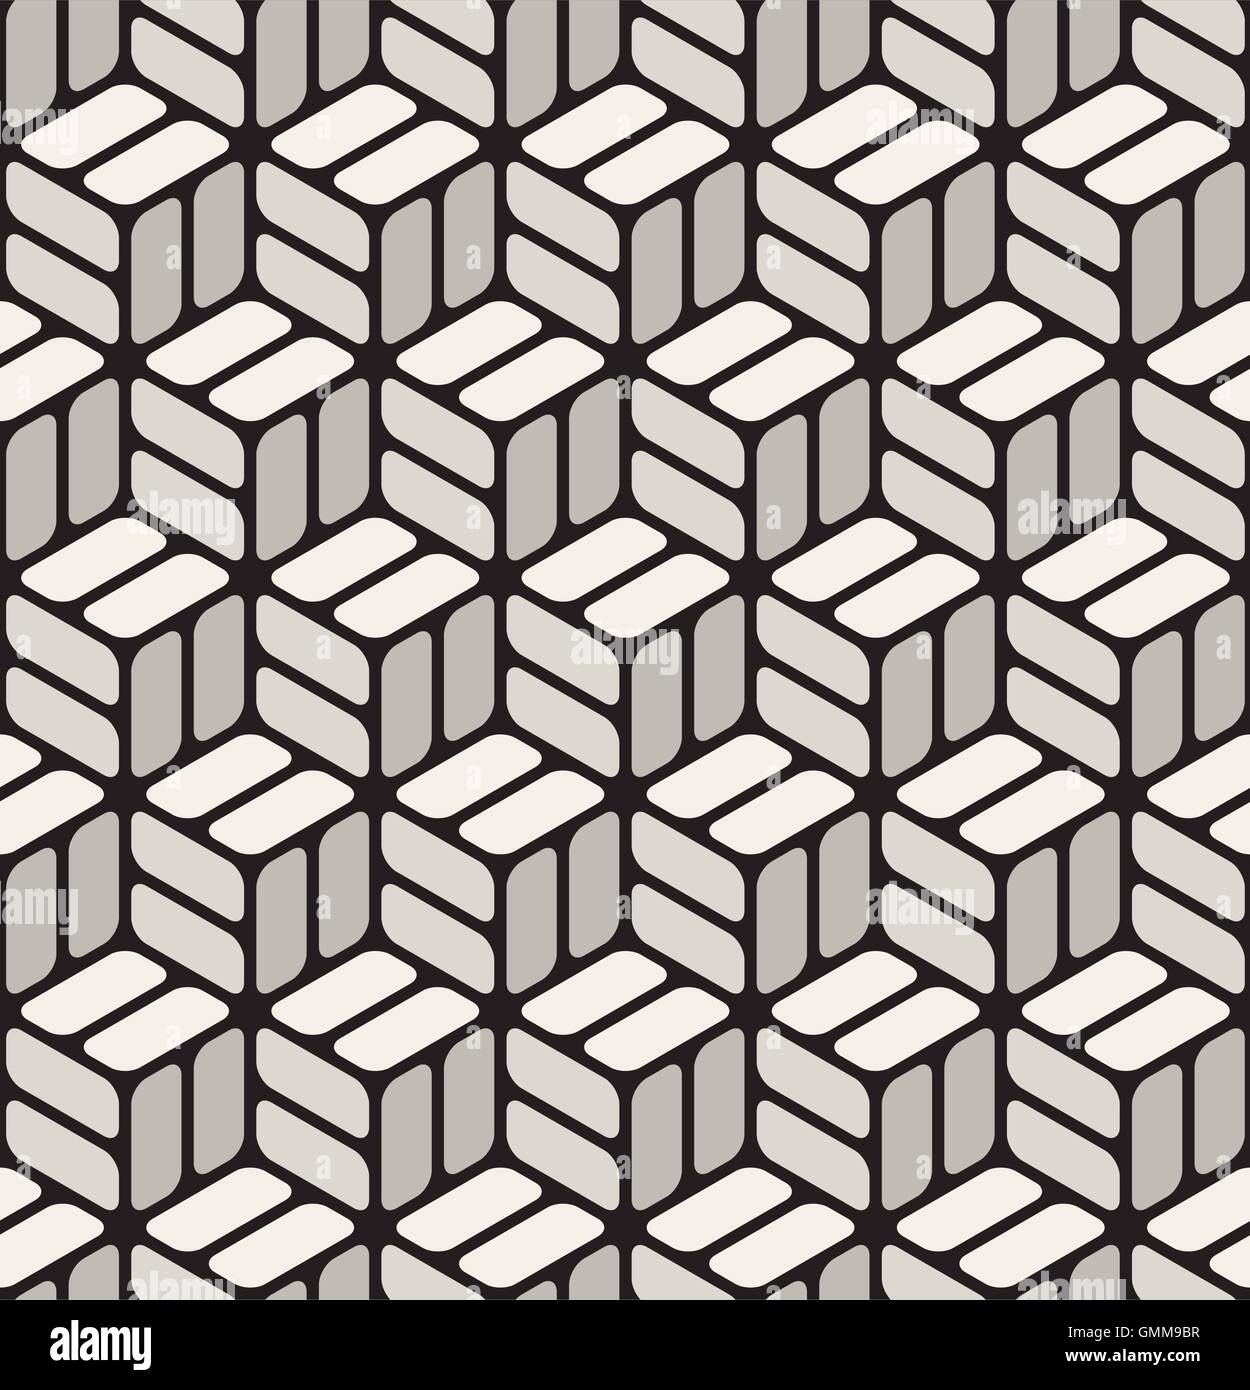 Seamless Vector Black & White Cubes Rectangles à coins arrondis Motif de la chaussée Illustration de Vecteur